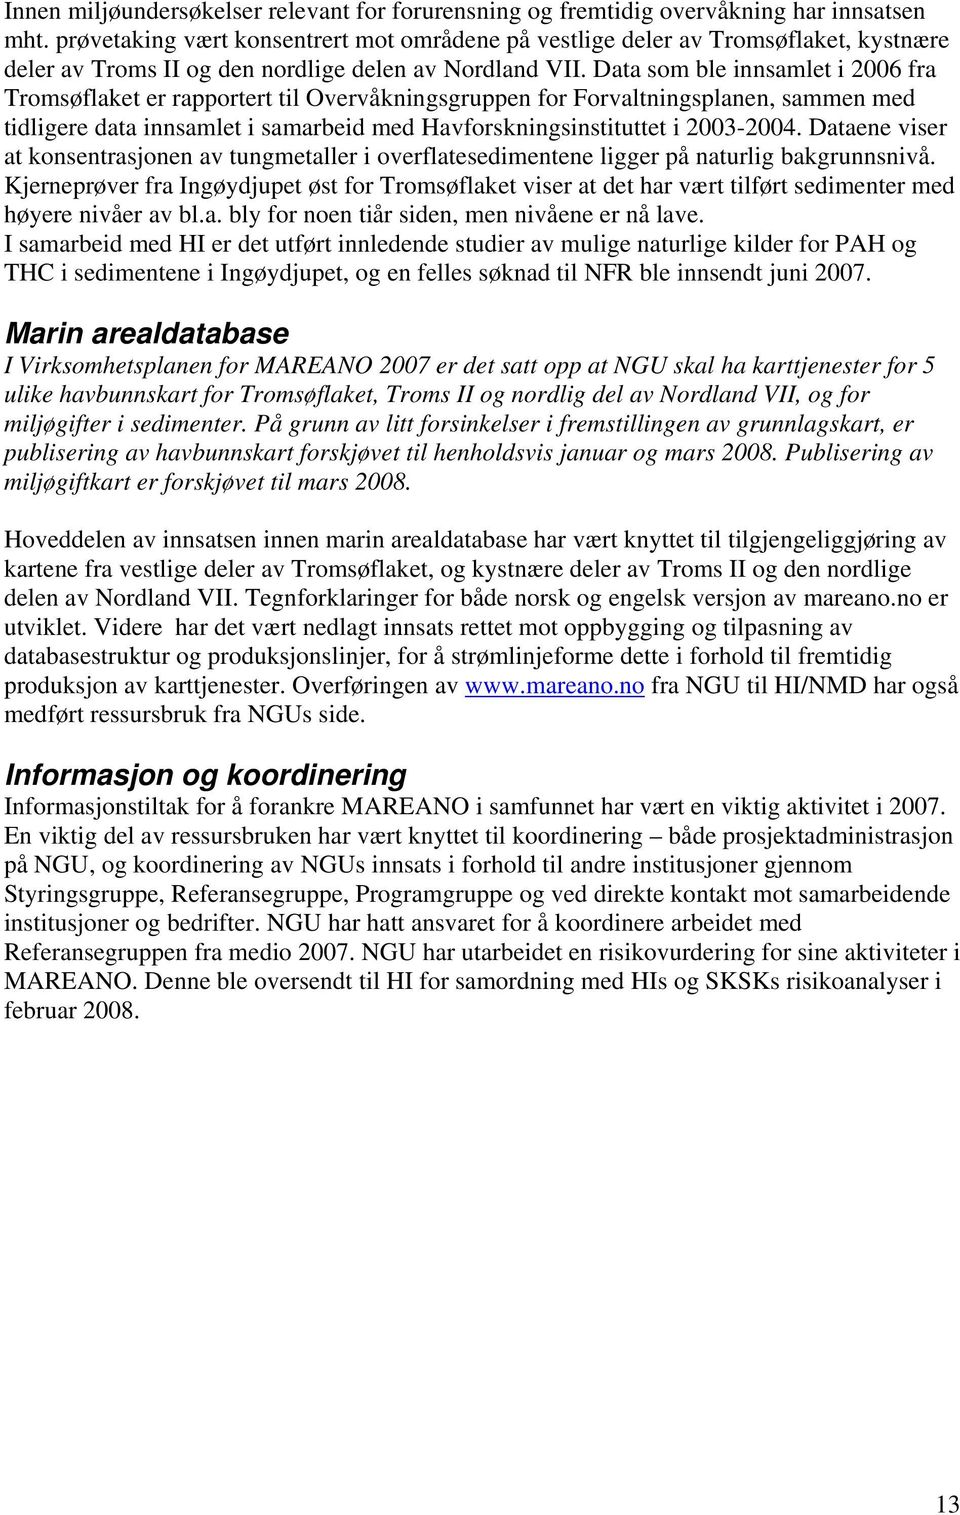 Data som ble innsamlet i 2006 fra Tromsøflaket er rapportert til Overvåkningsgruppen for Forvaltningsplanen, sammen med tidligere data innsamlet i samarbeid med Havforskningsinstituttet i 2003-2004.